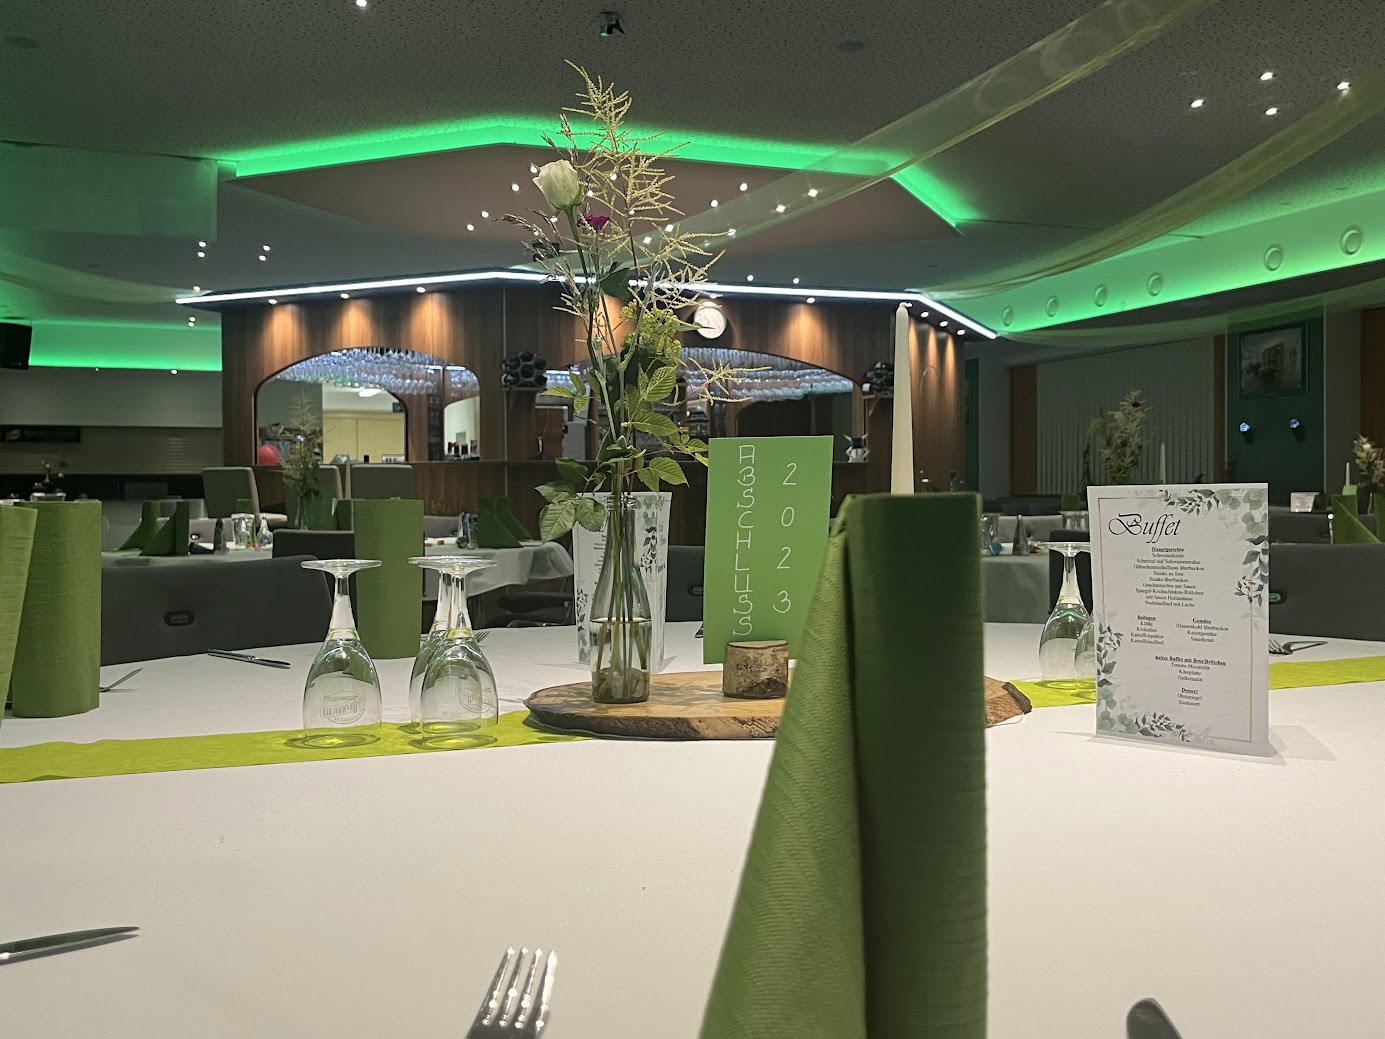 Tischdeko für eine Abschlussfeier in der Mittel-BAR Erzgebirge, hier in grün